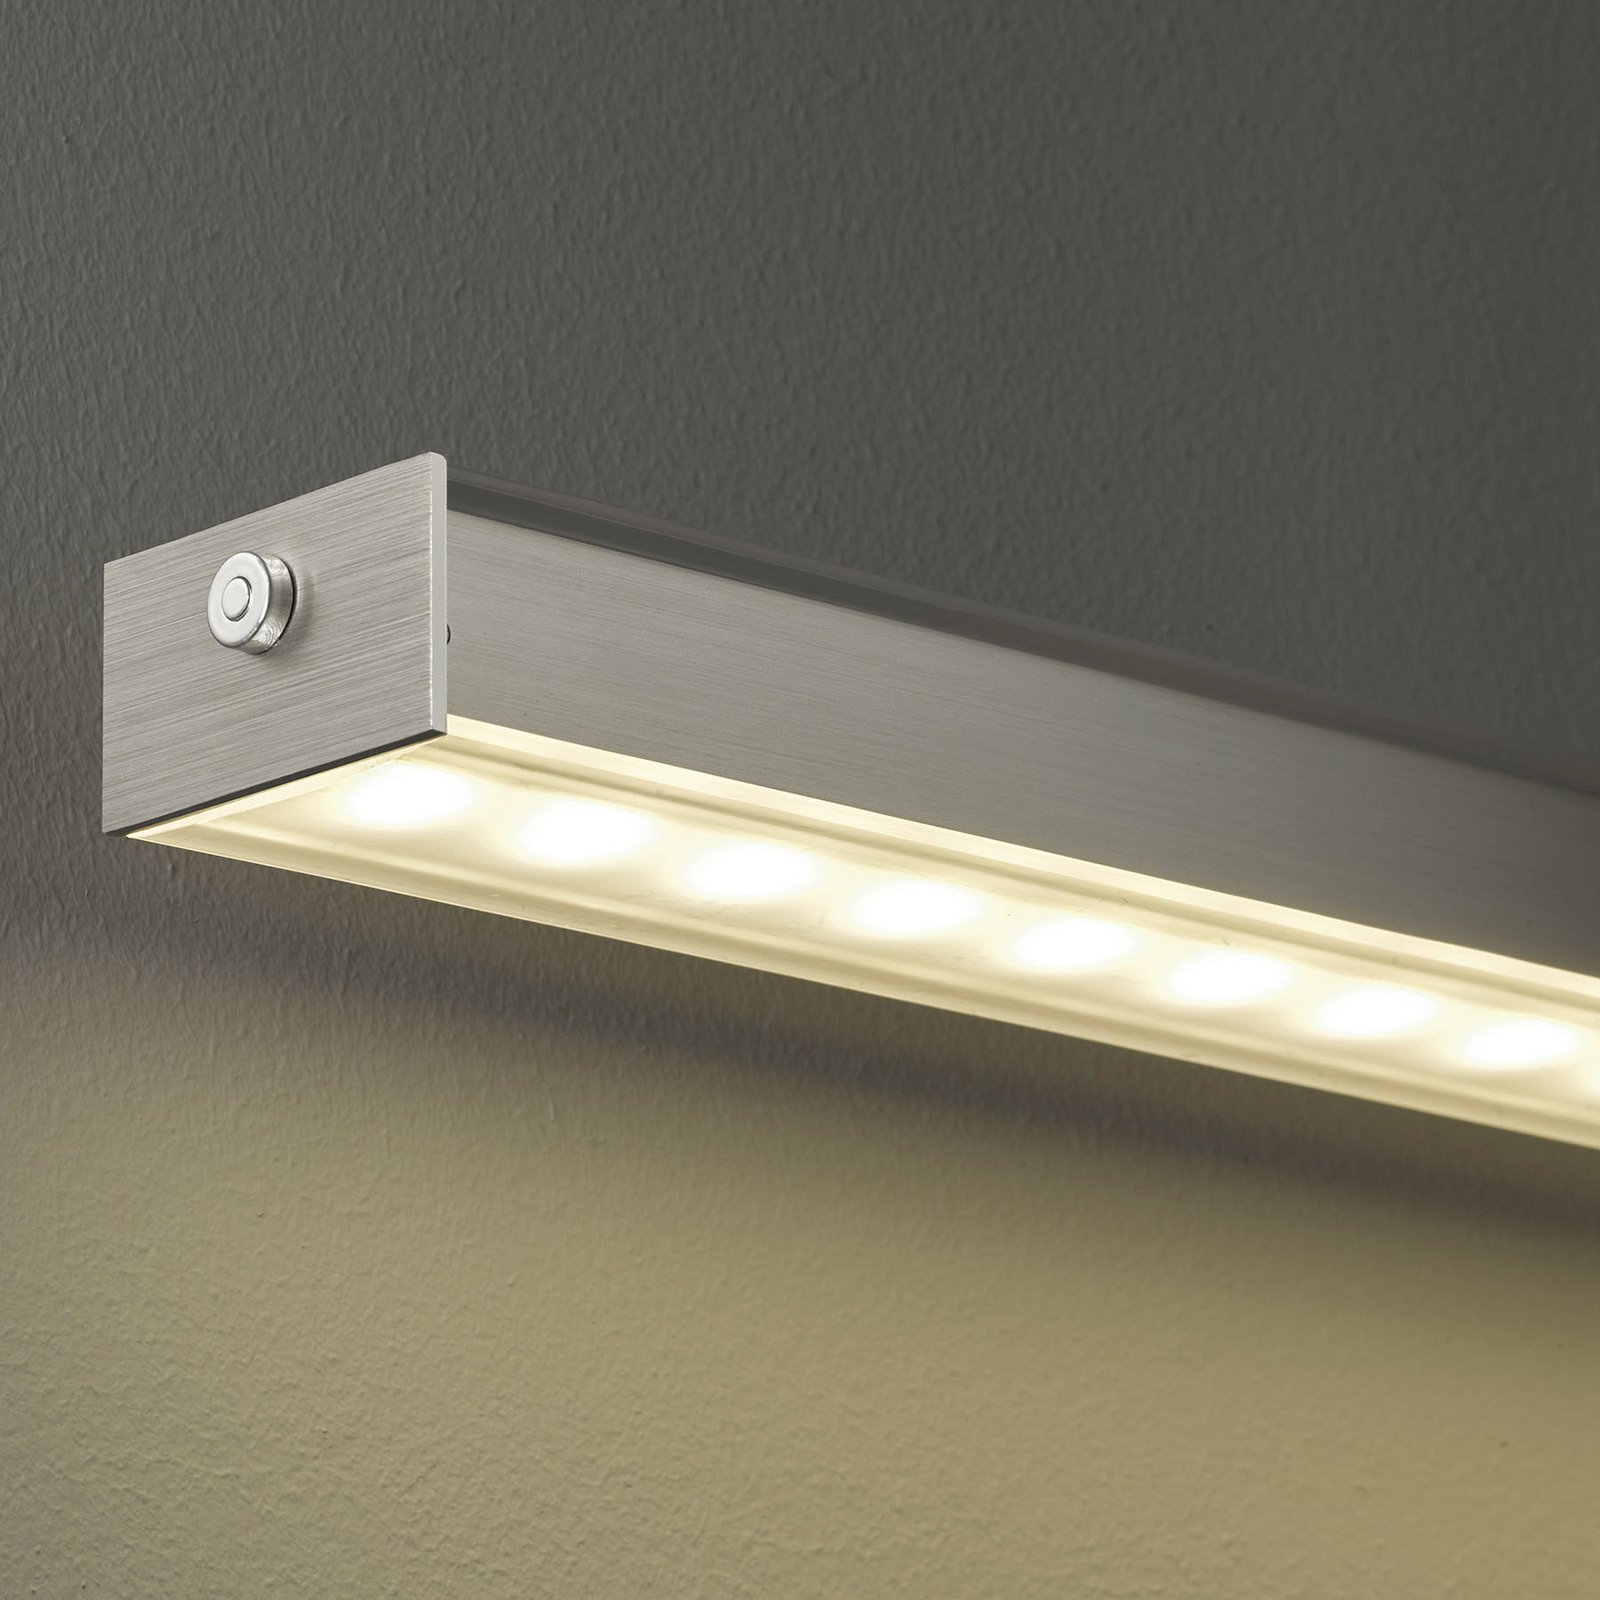 Suspension LED Vitan TW, grise, longueur 150 cm